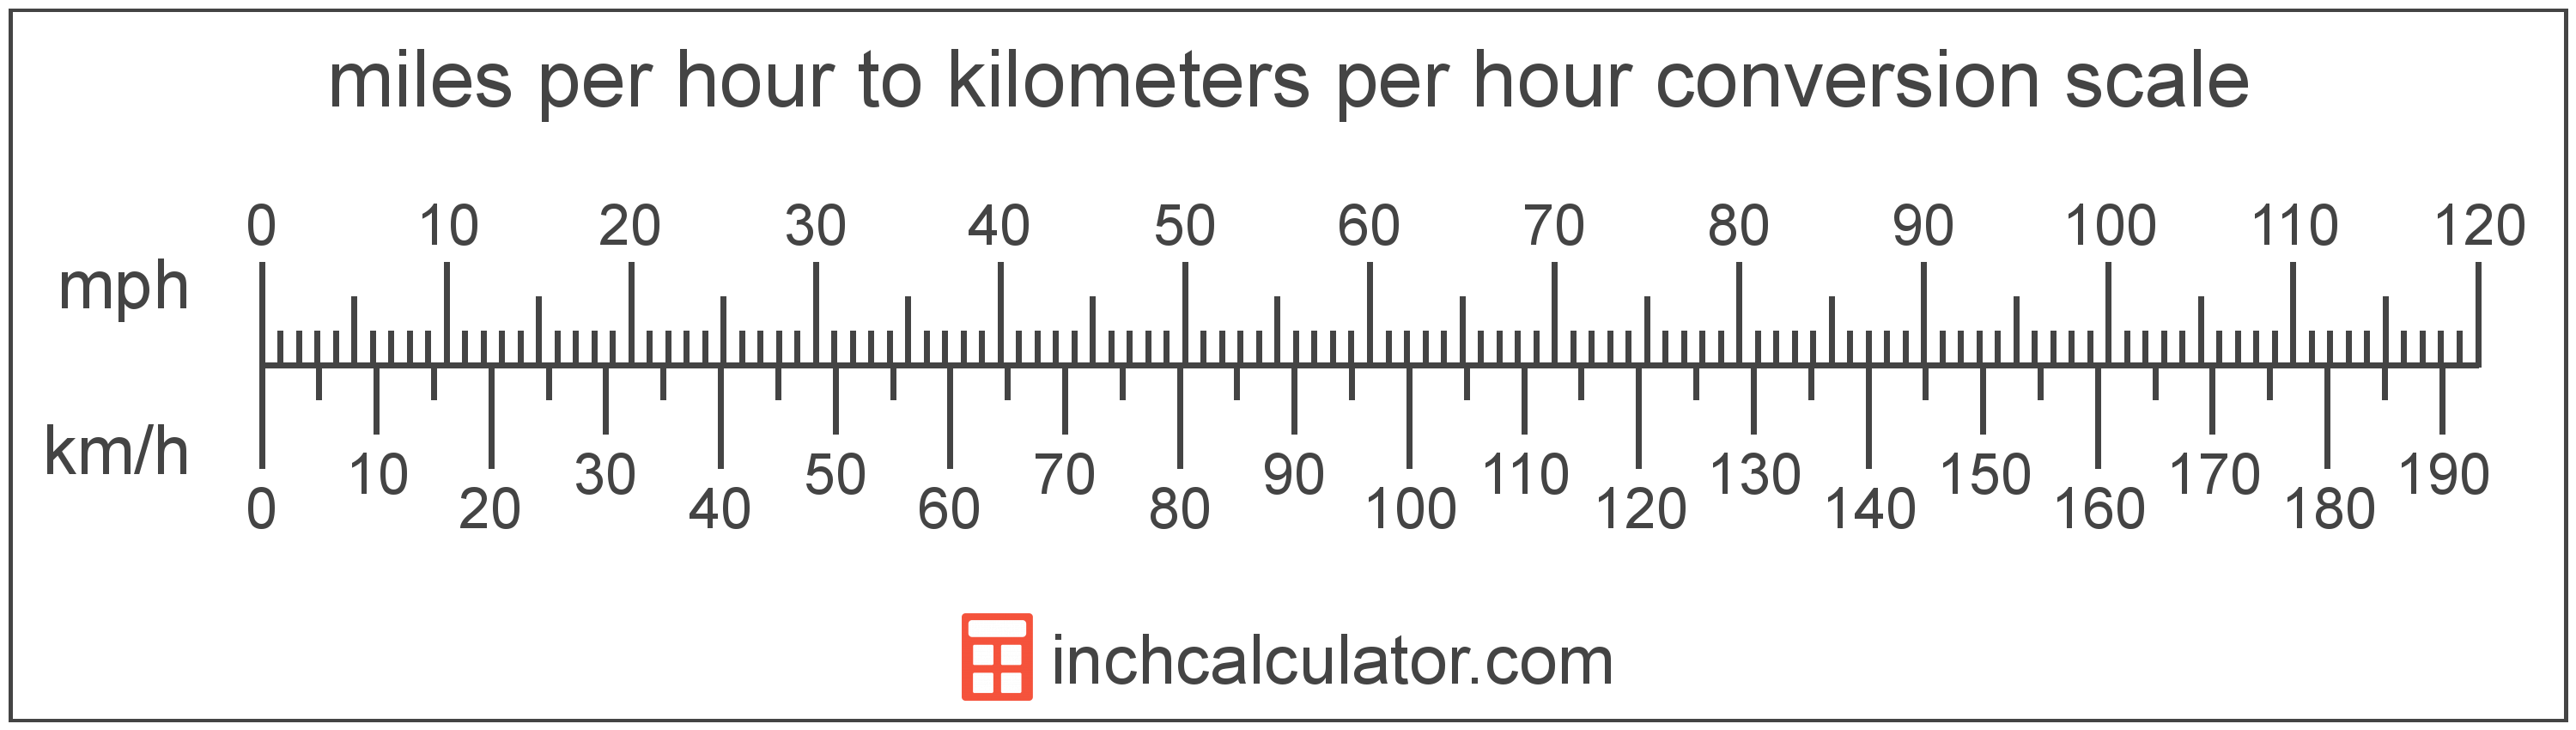 Mile Per Hour To Kilometer Per Hour Conversion Scale 